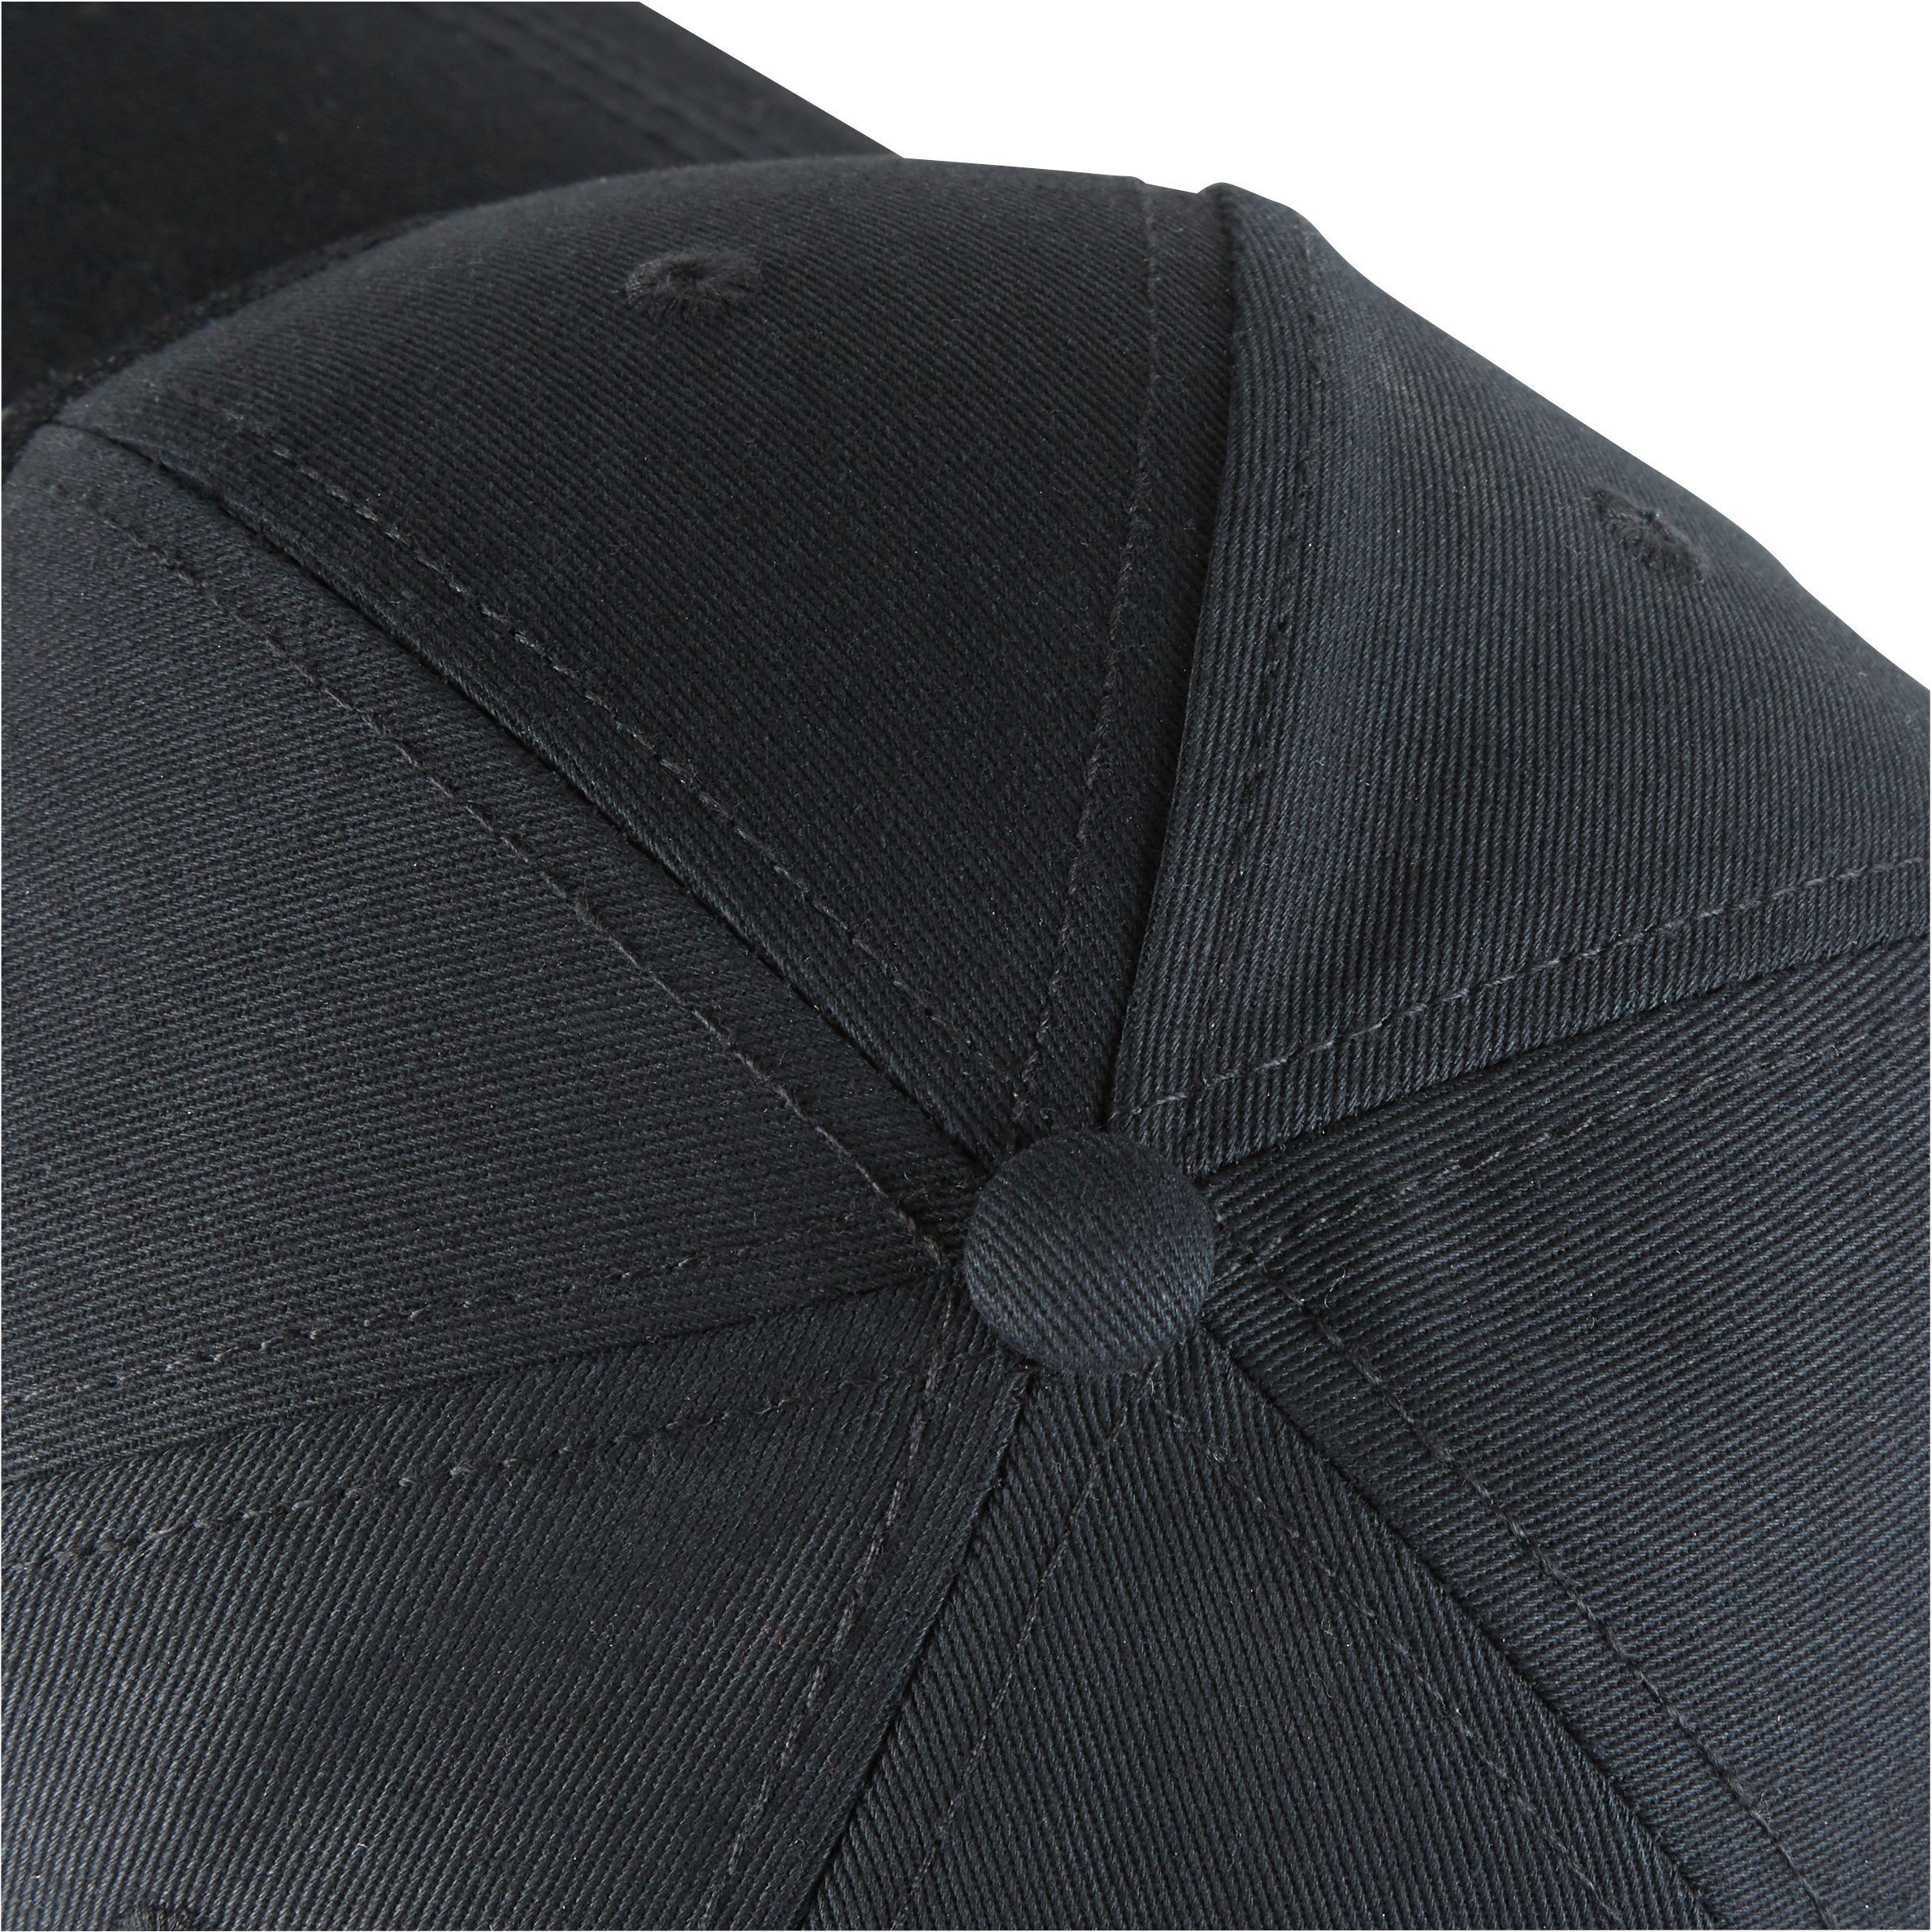 Northern Country Snapback Cap größenverstellbar, vor schützt Sonne Beauty beim Arbeiten Black